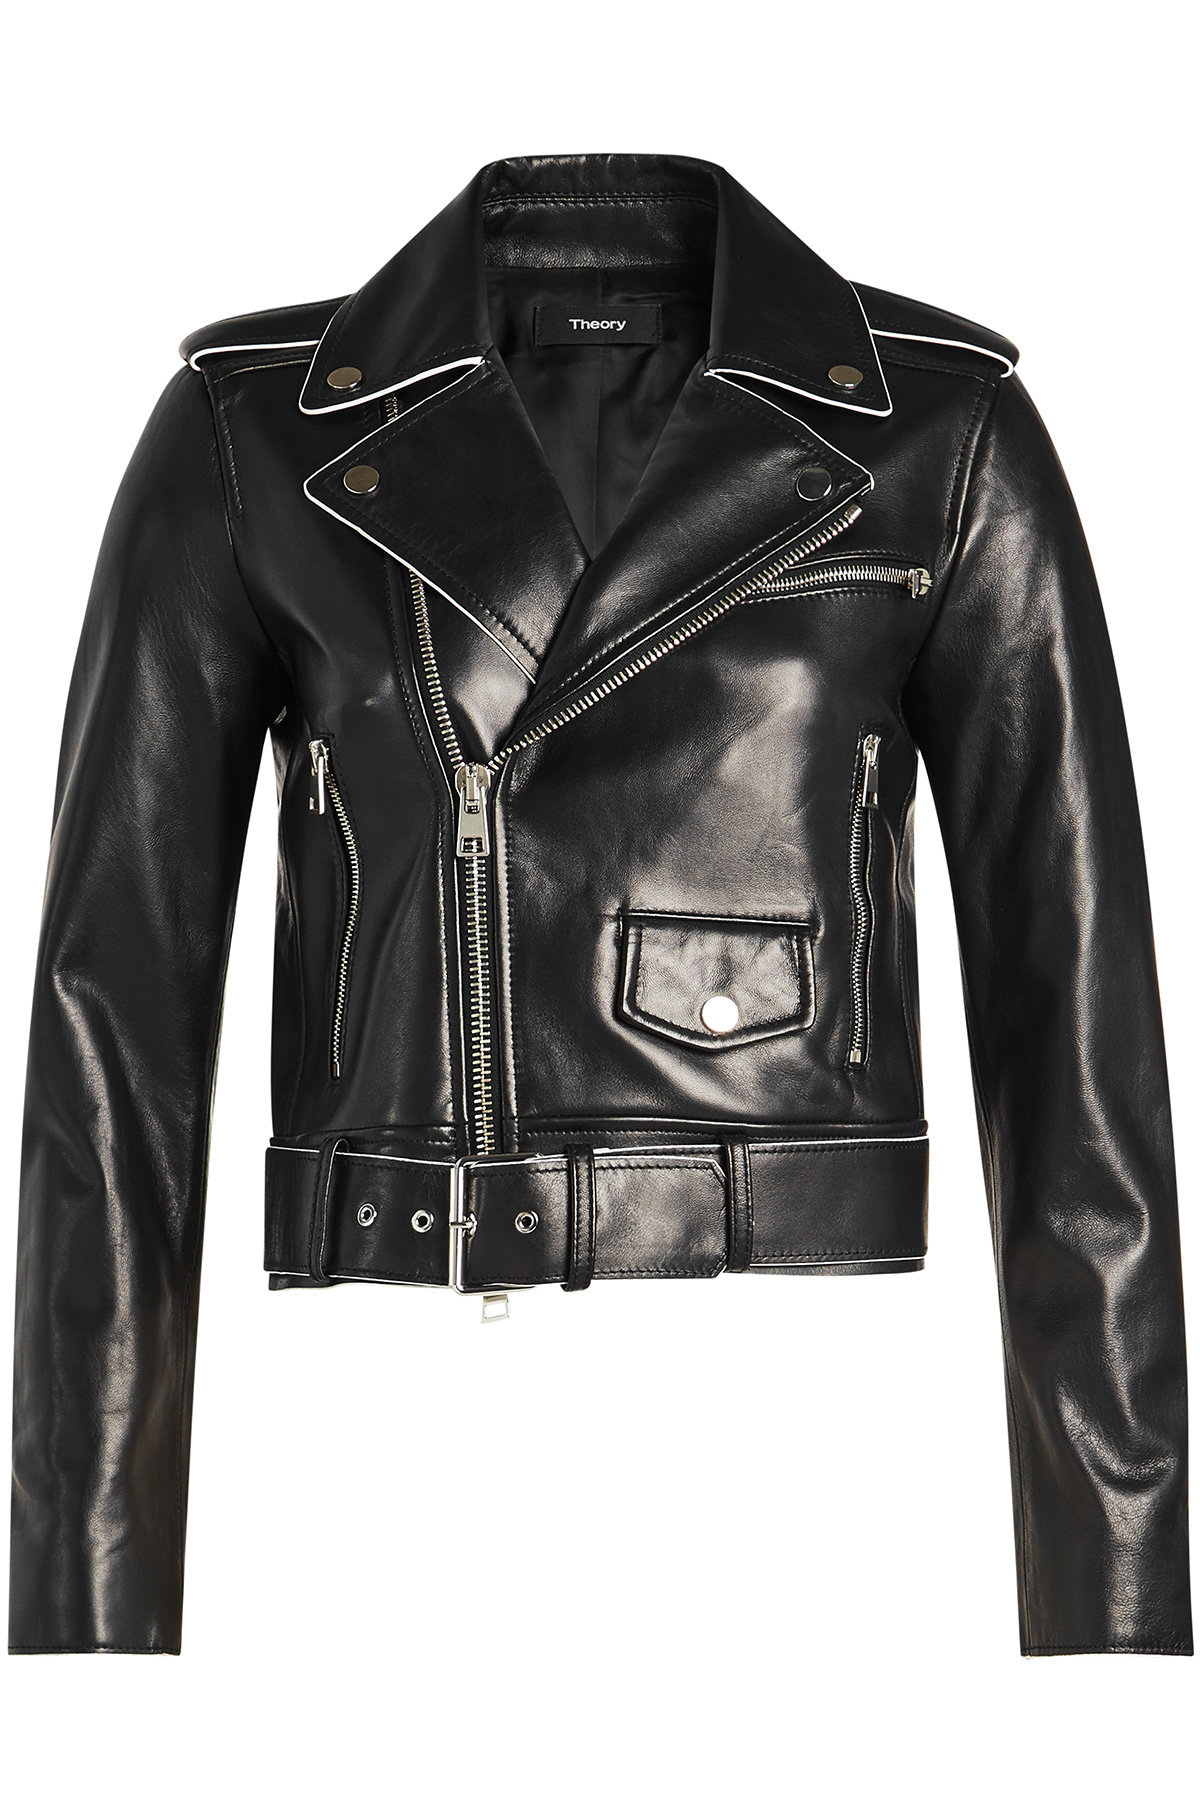 Theory - Shrunken Leather Biker Jacket